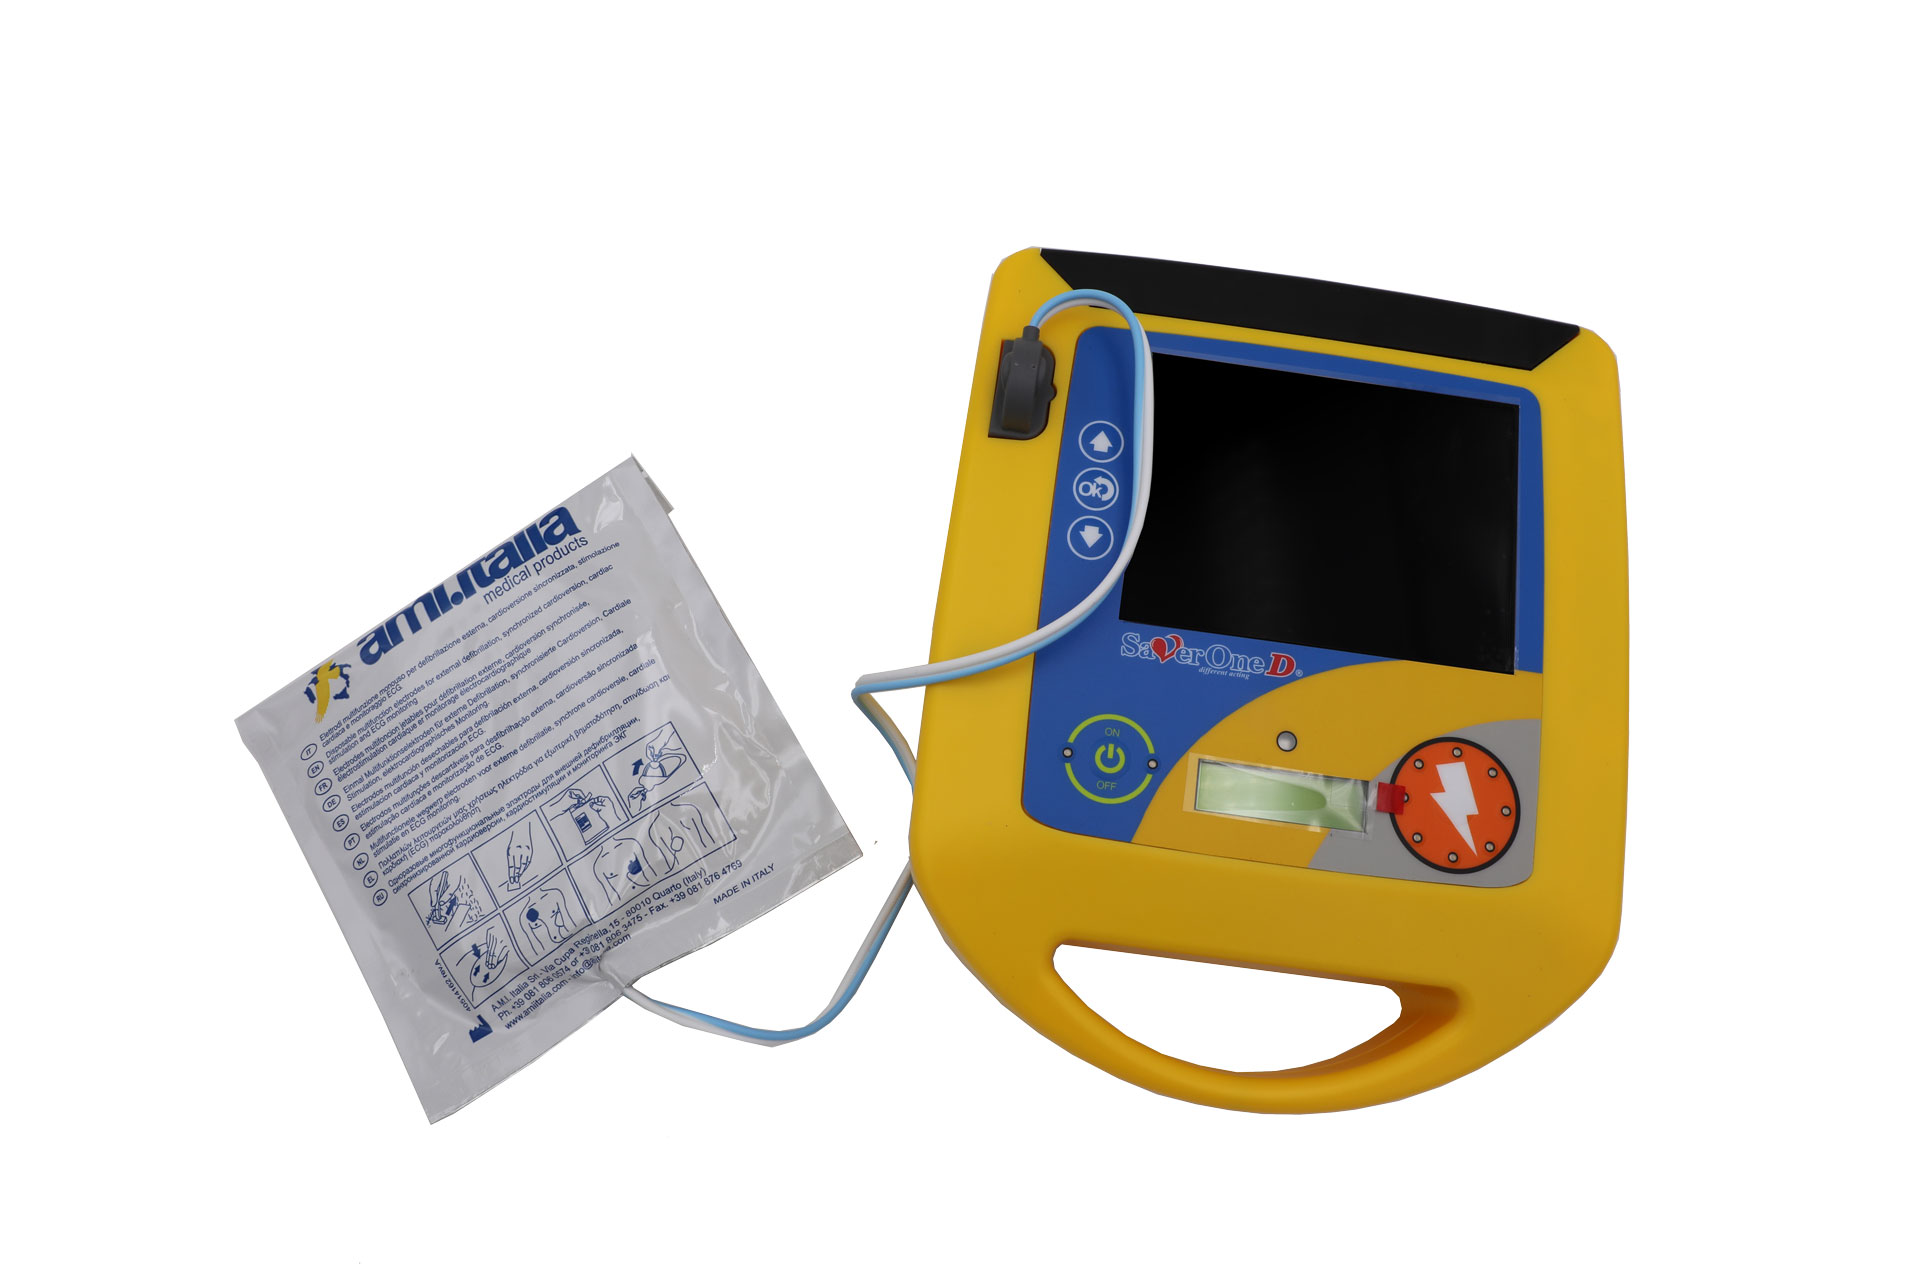 Saver One AED Profi Defibrillator Modell D mit Drucker Upgrade